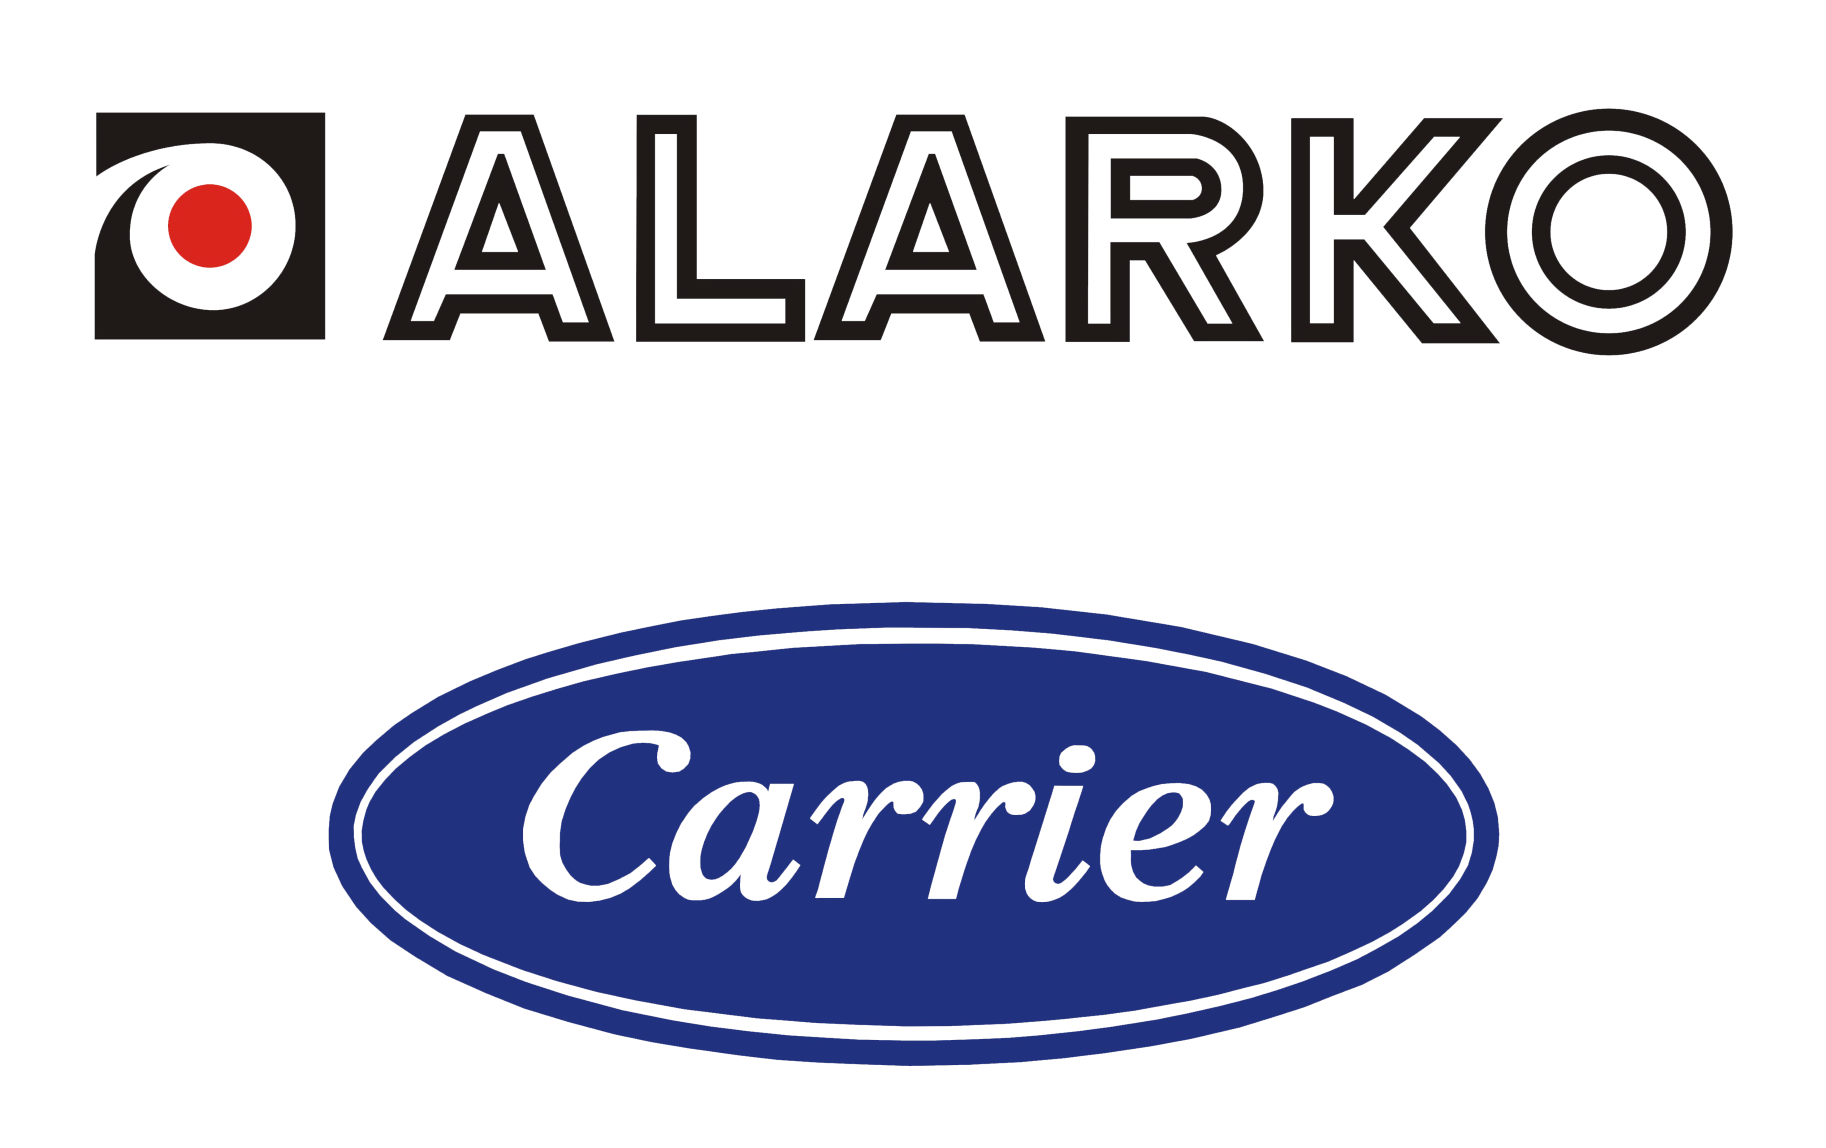 Alarko Carrier Türkiye’nin en büyük şirketleri arasında